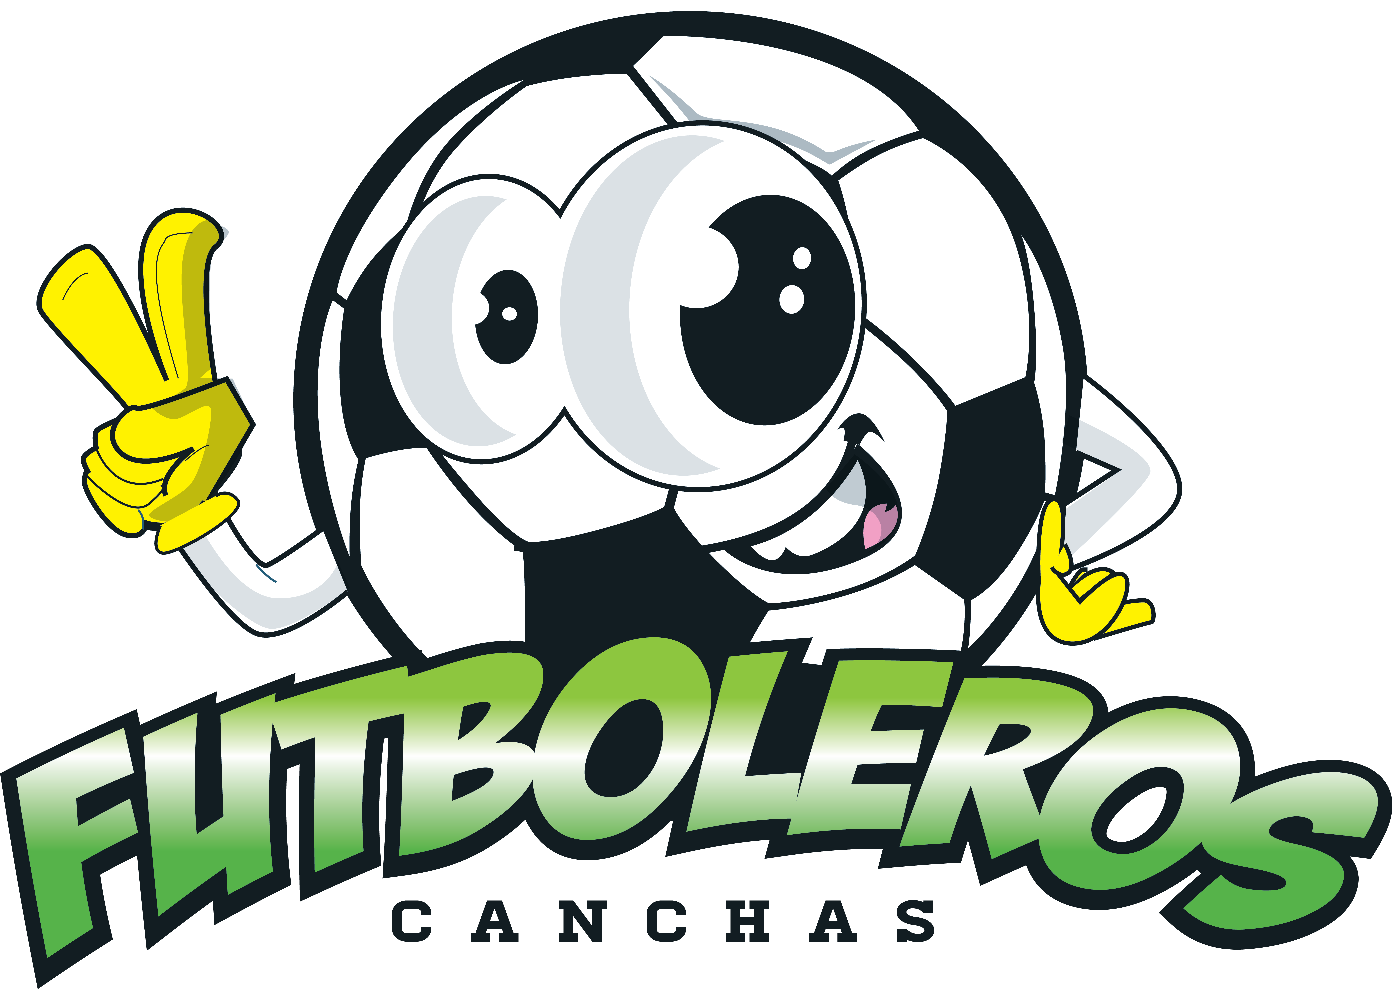 Canchas Futboleros Bogota